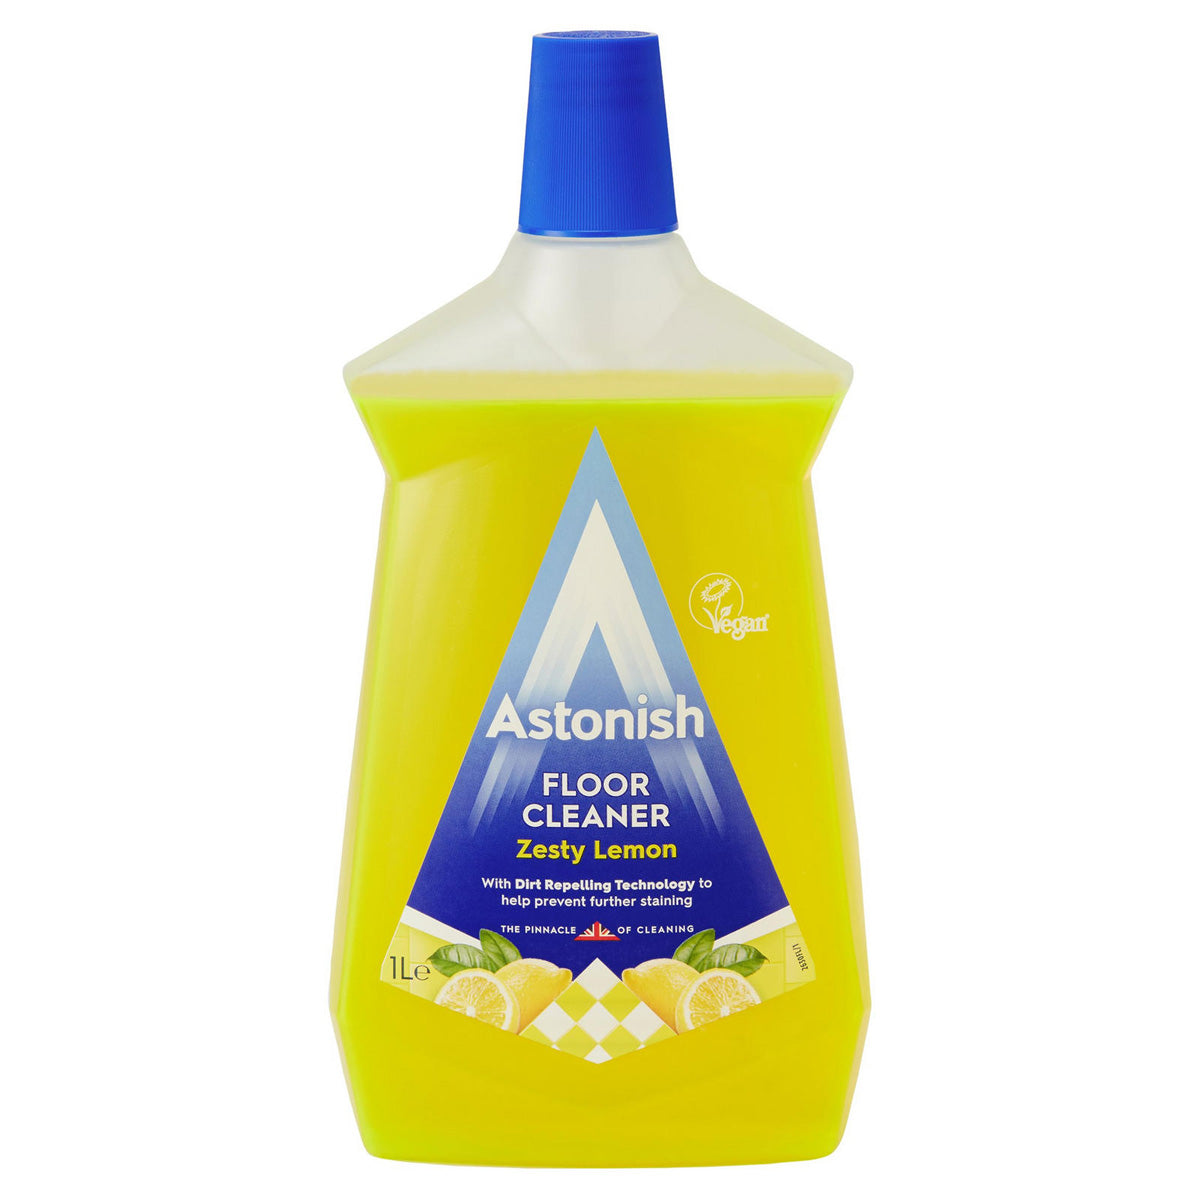 A bottle of Astonish - Floor Cleaner Zesty Lemon - 1L.